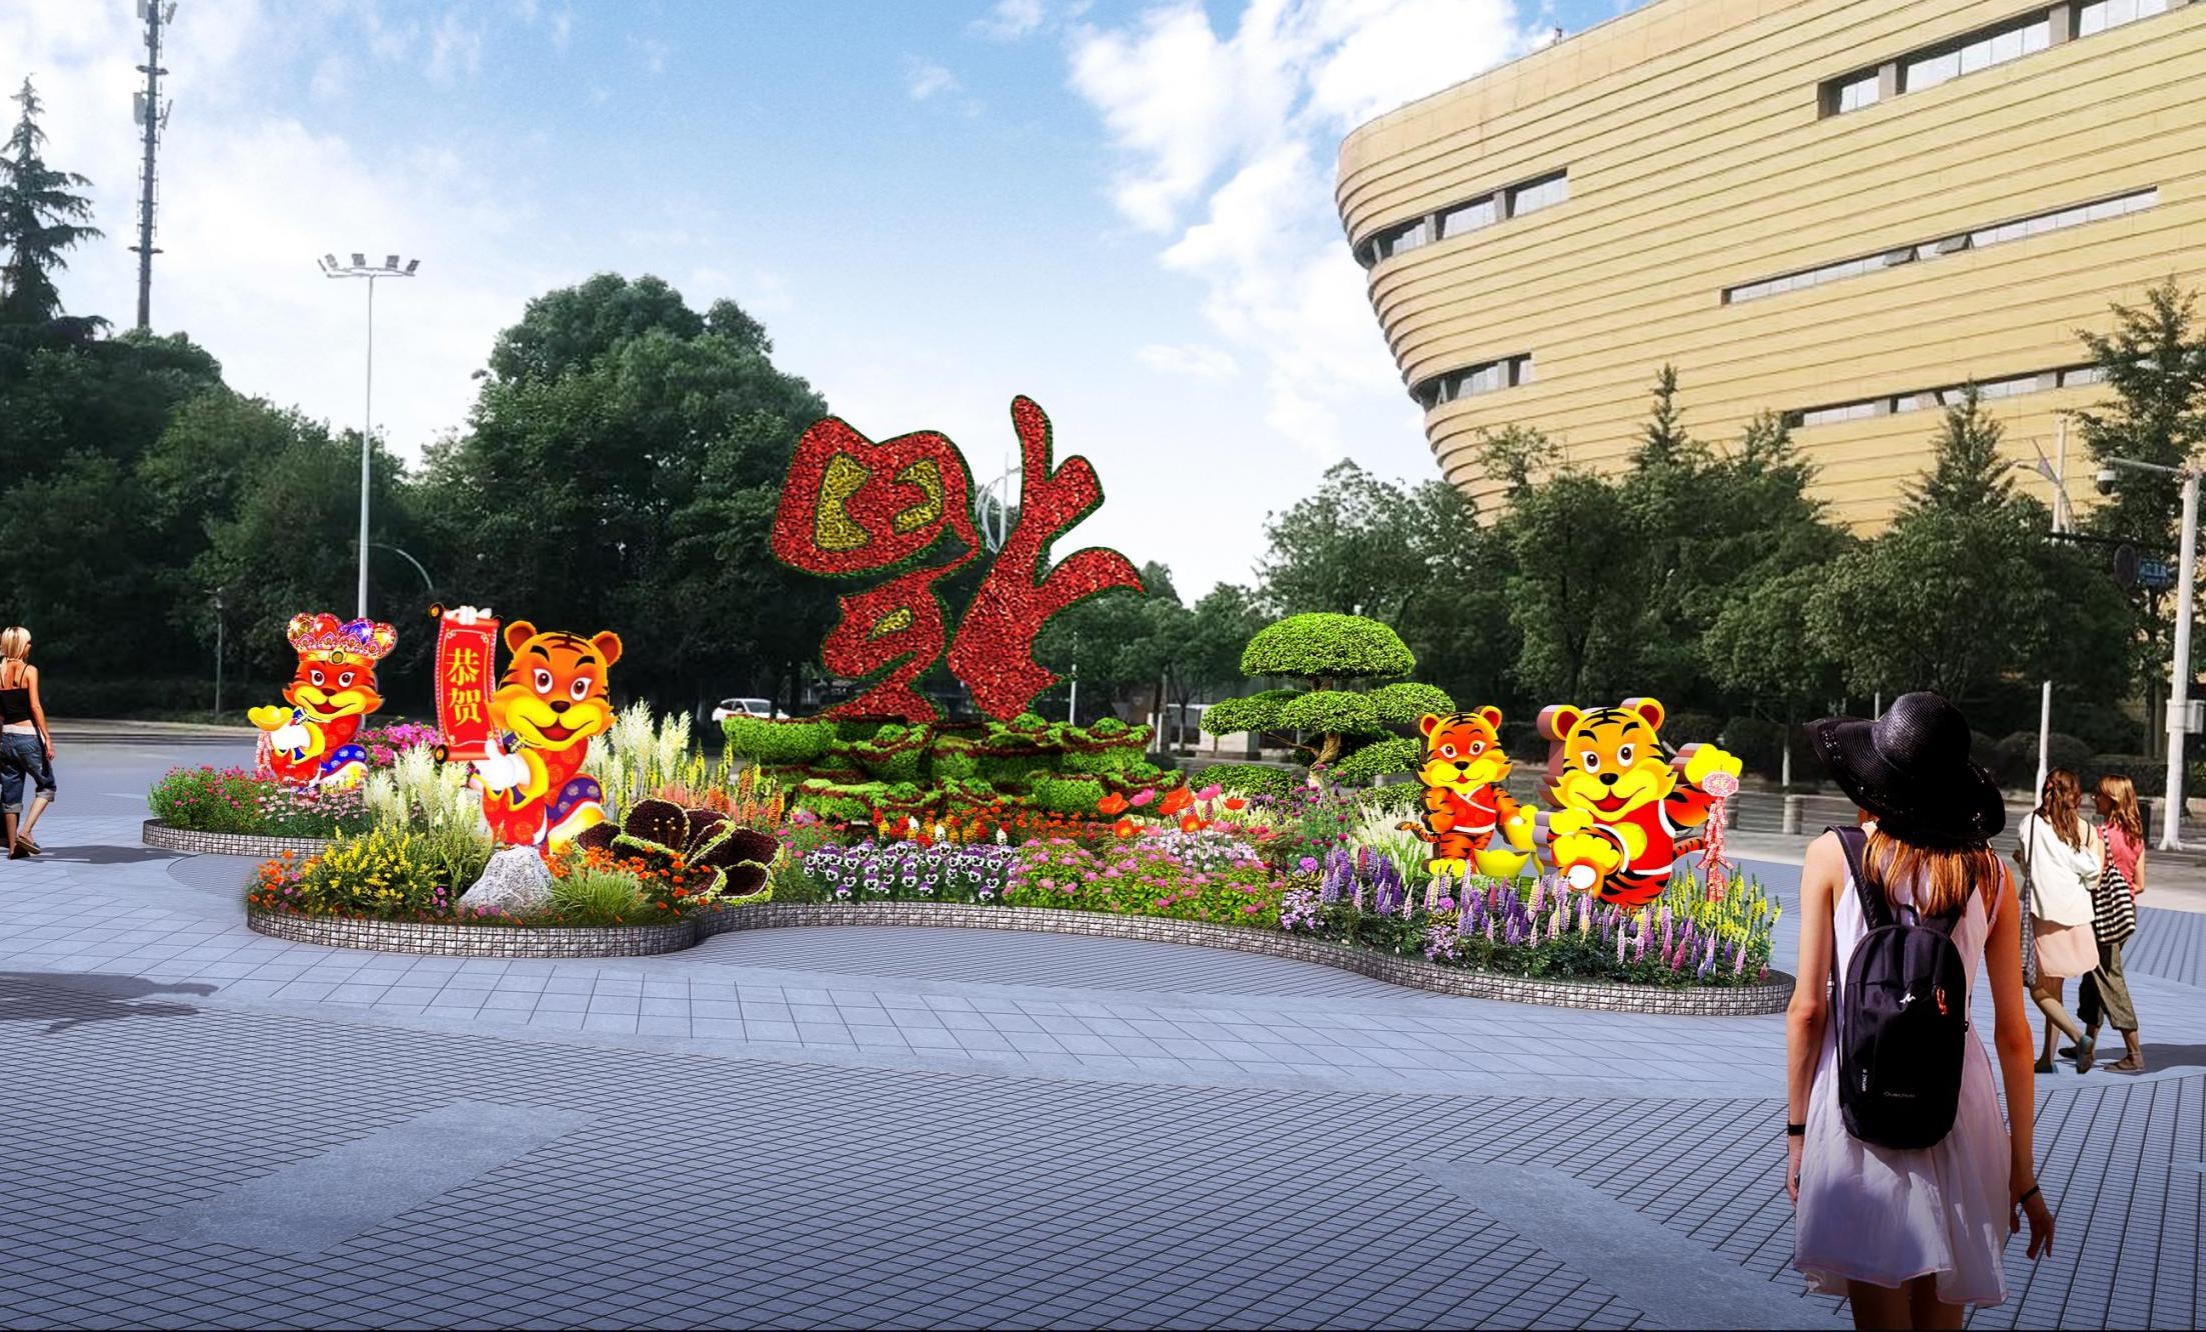 浙江?杭州 滨江区住建局2021年春节情形小品及特色花展安排项目